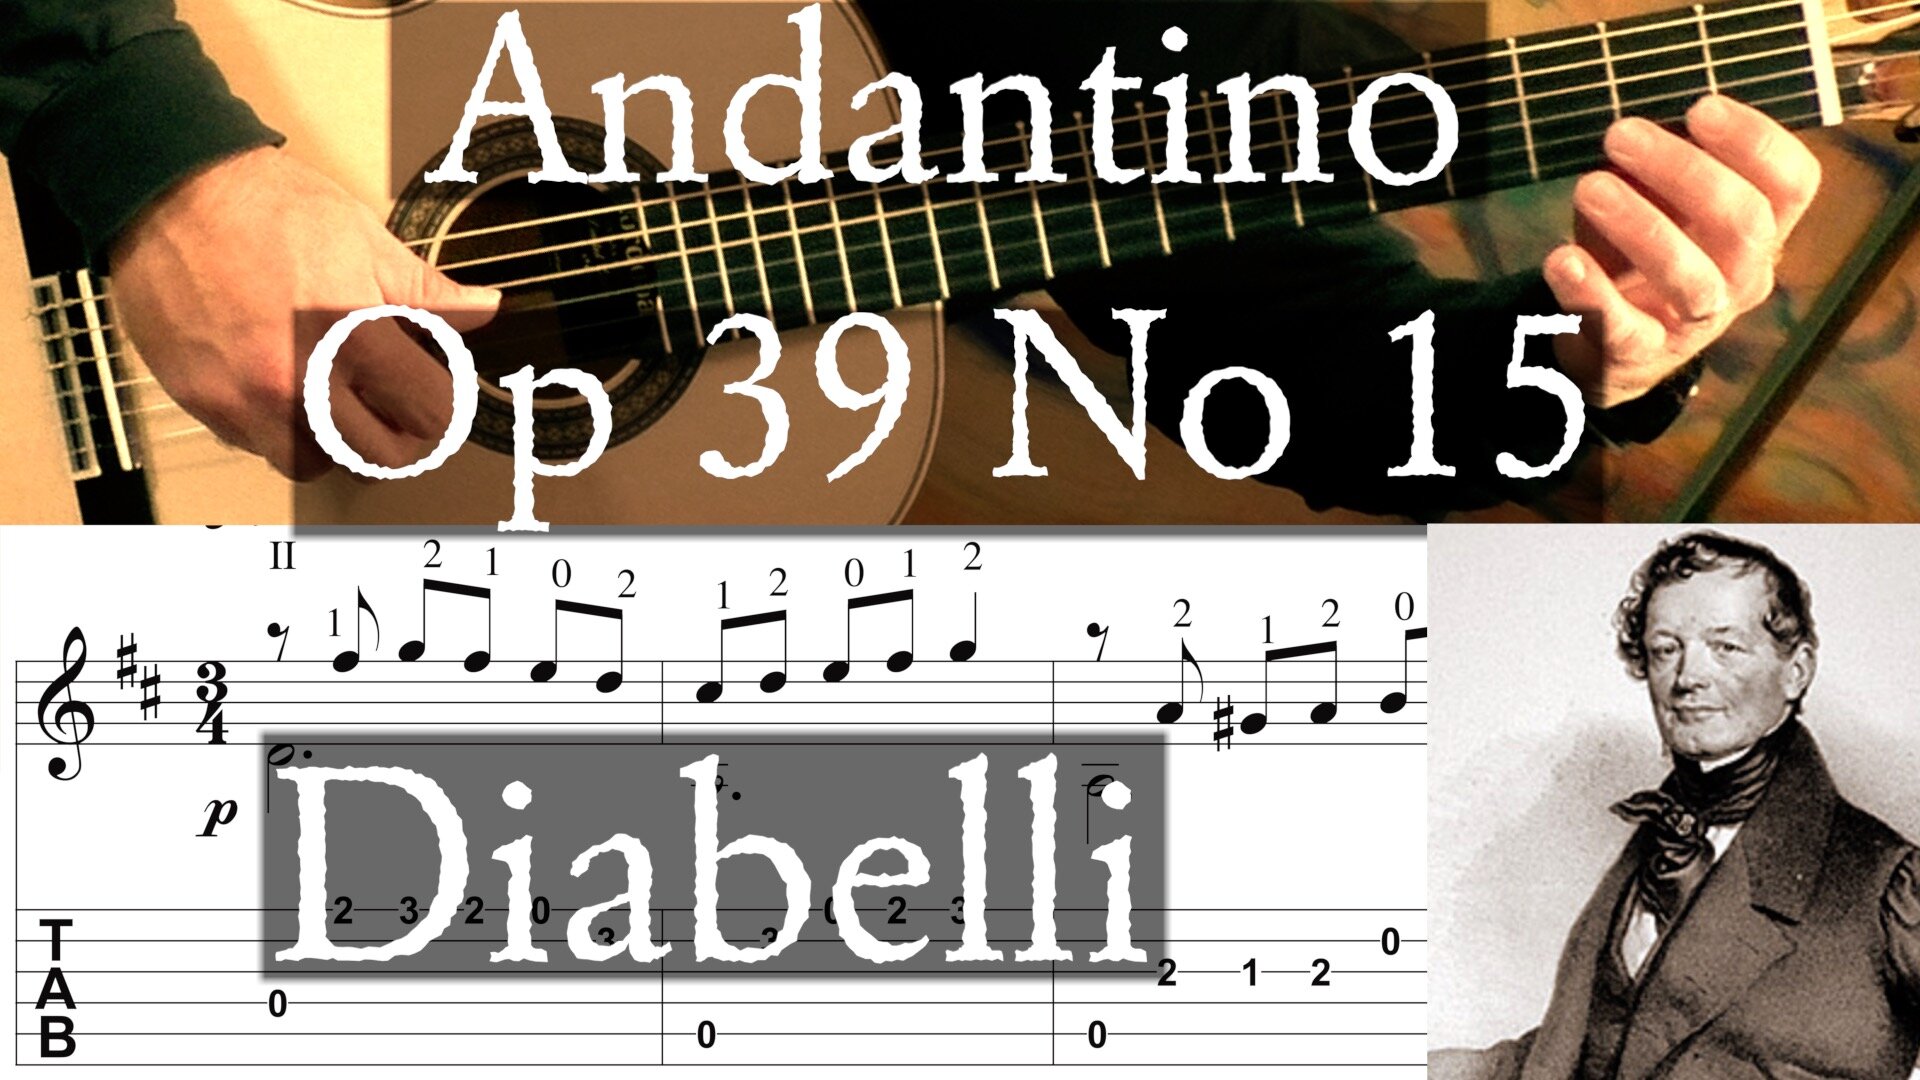 Andantino Op 39 No 2 Thumbnail.jpg